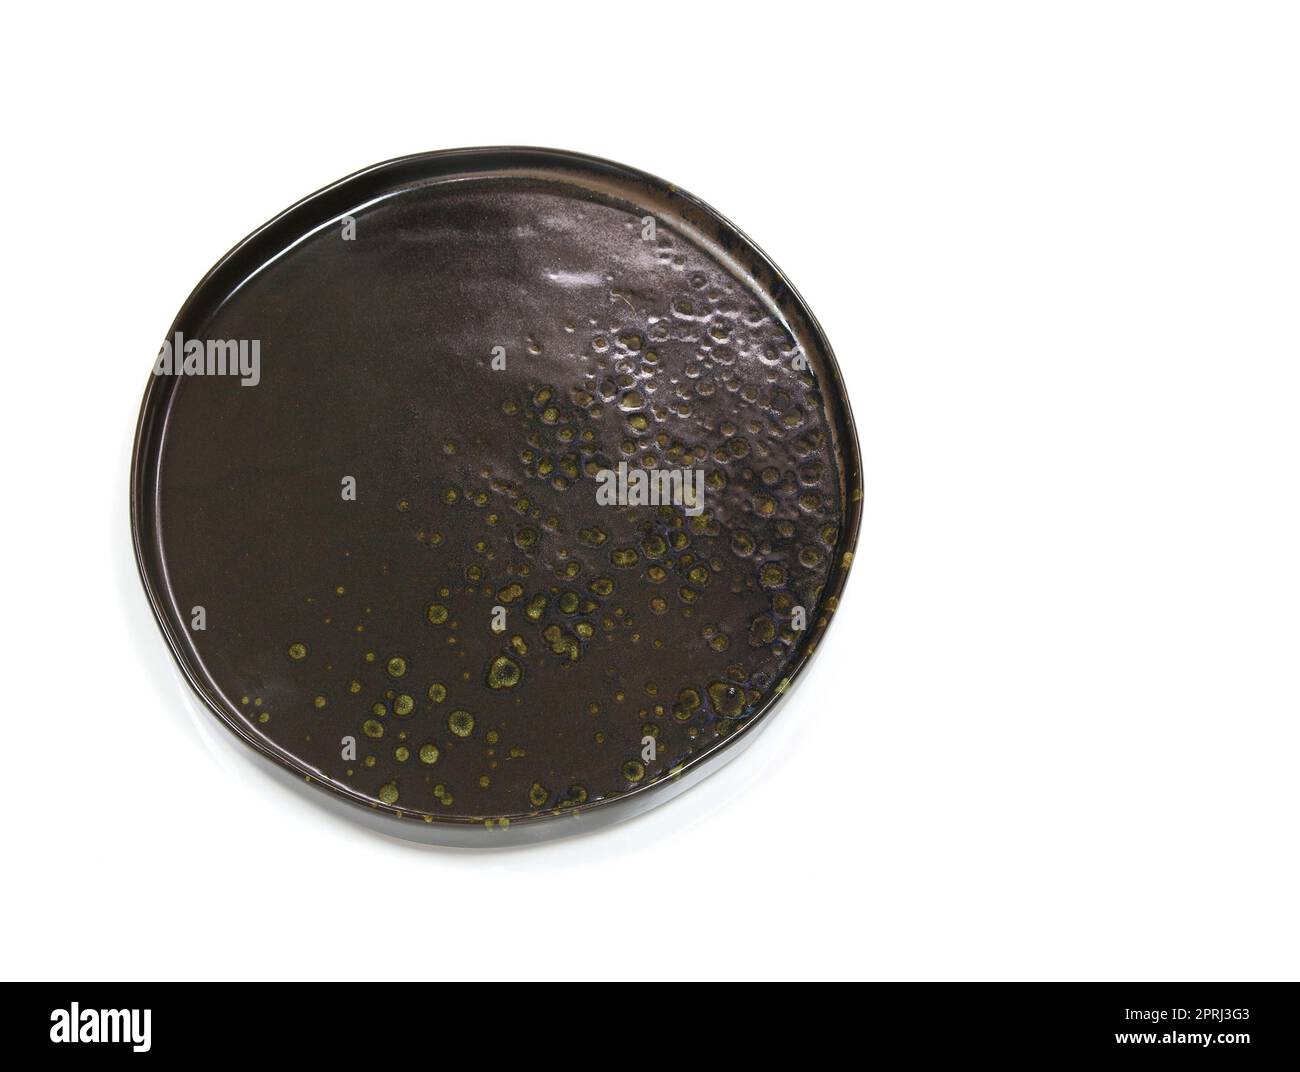 Cerchio nero vuoto moderna piastra in ceramica con texture ruvida, isolata su sfondo bianco con tracciato di ritaglio, vista dall'alto Foto Stock